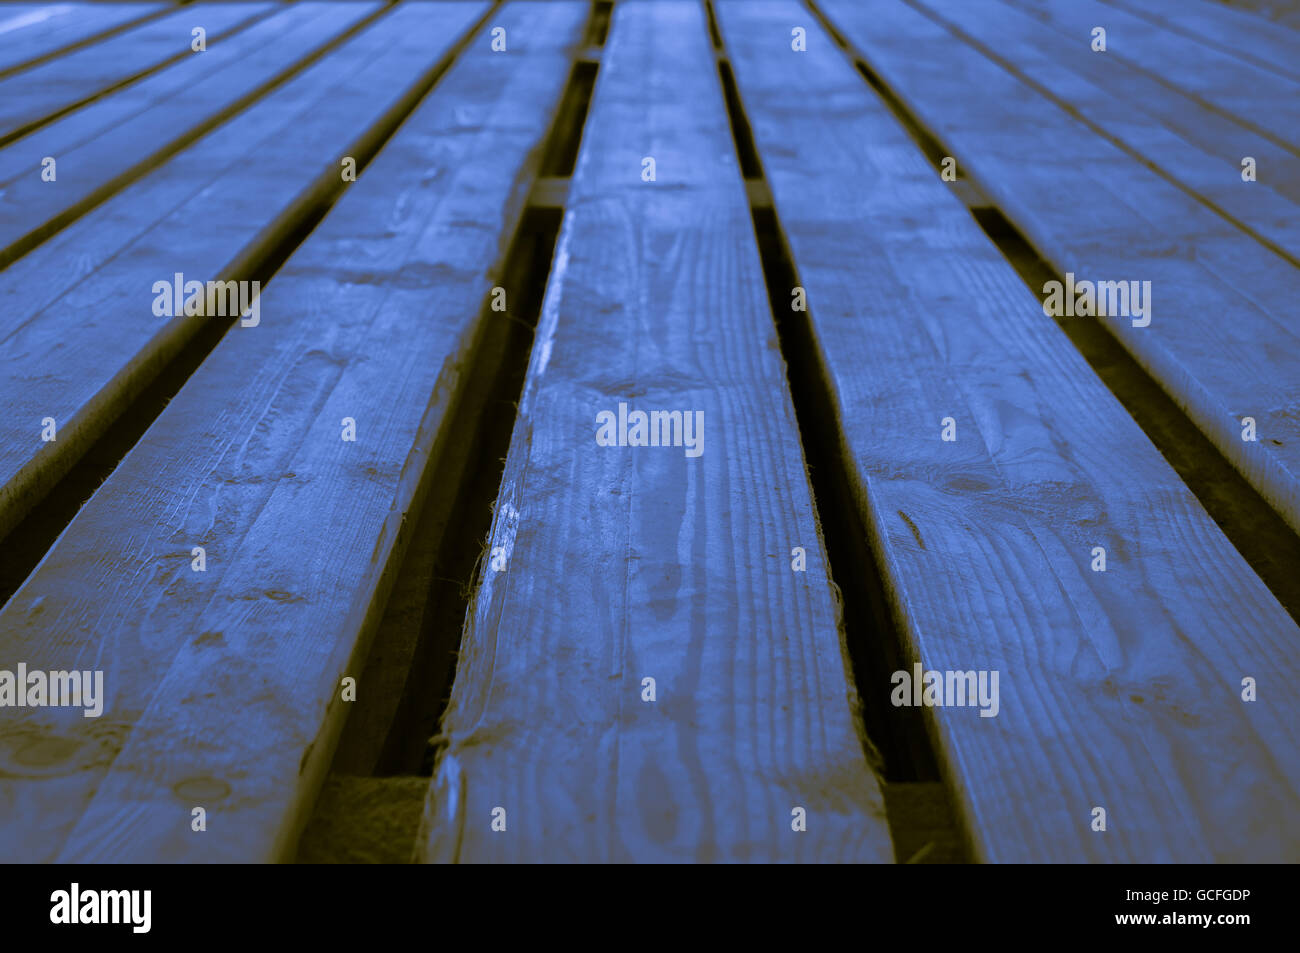 Blu ruvida di colore bruno giallastro indigo palcoscenico in legno sfondo con bassa profondità di campo Foto Stock